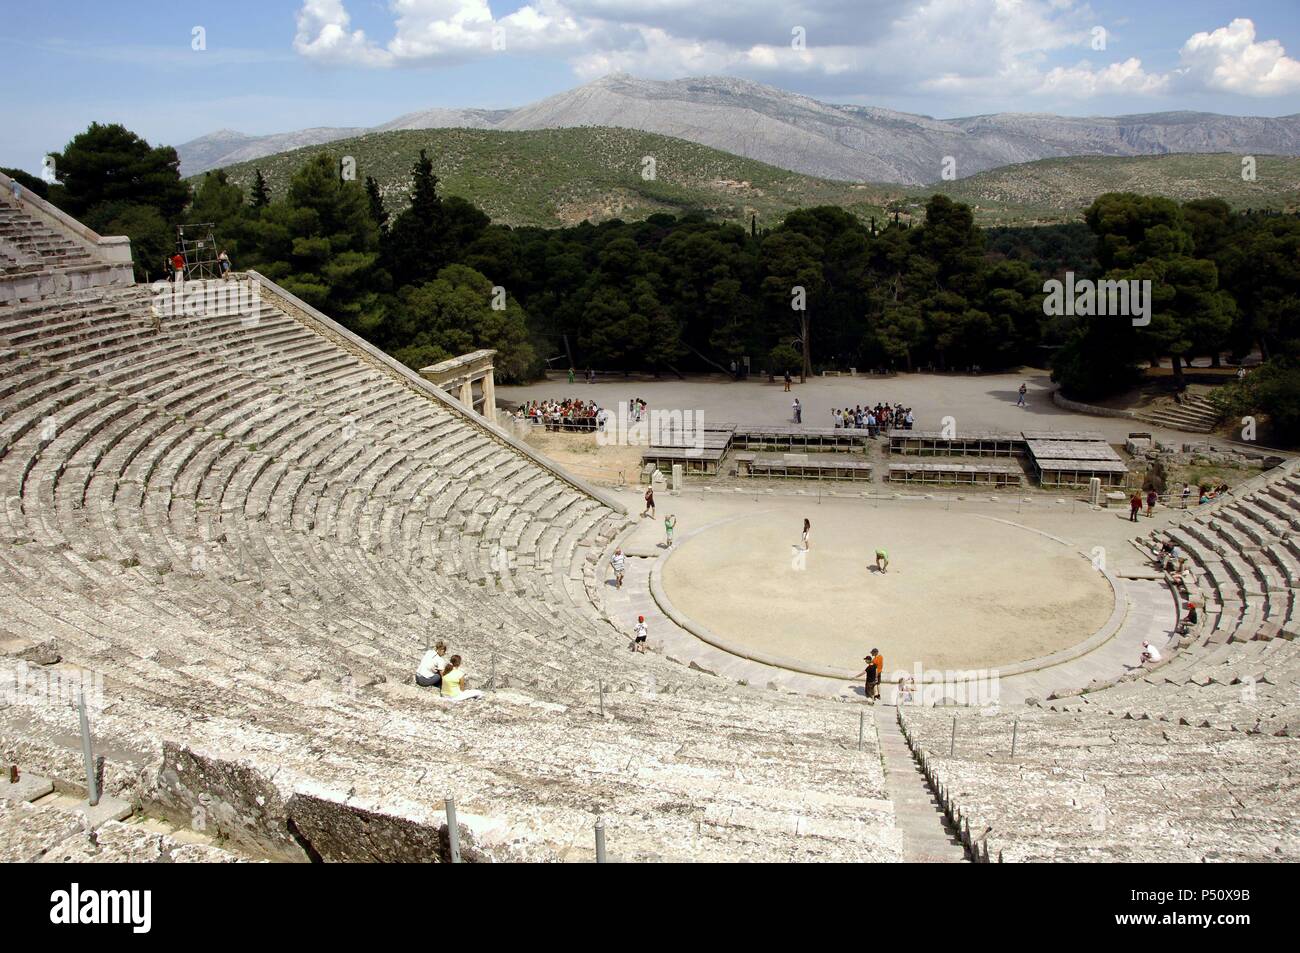 Arte Griego. Teatro de Epidaurus por Policleto el Joven (siglo IV a.C.).  Epidauro. El Peloponeso Fotografía de stock - Alamy